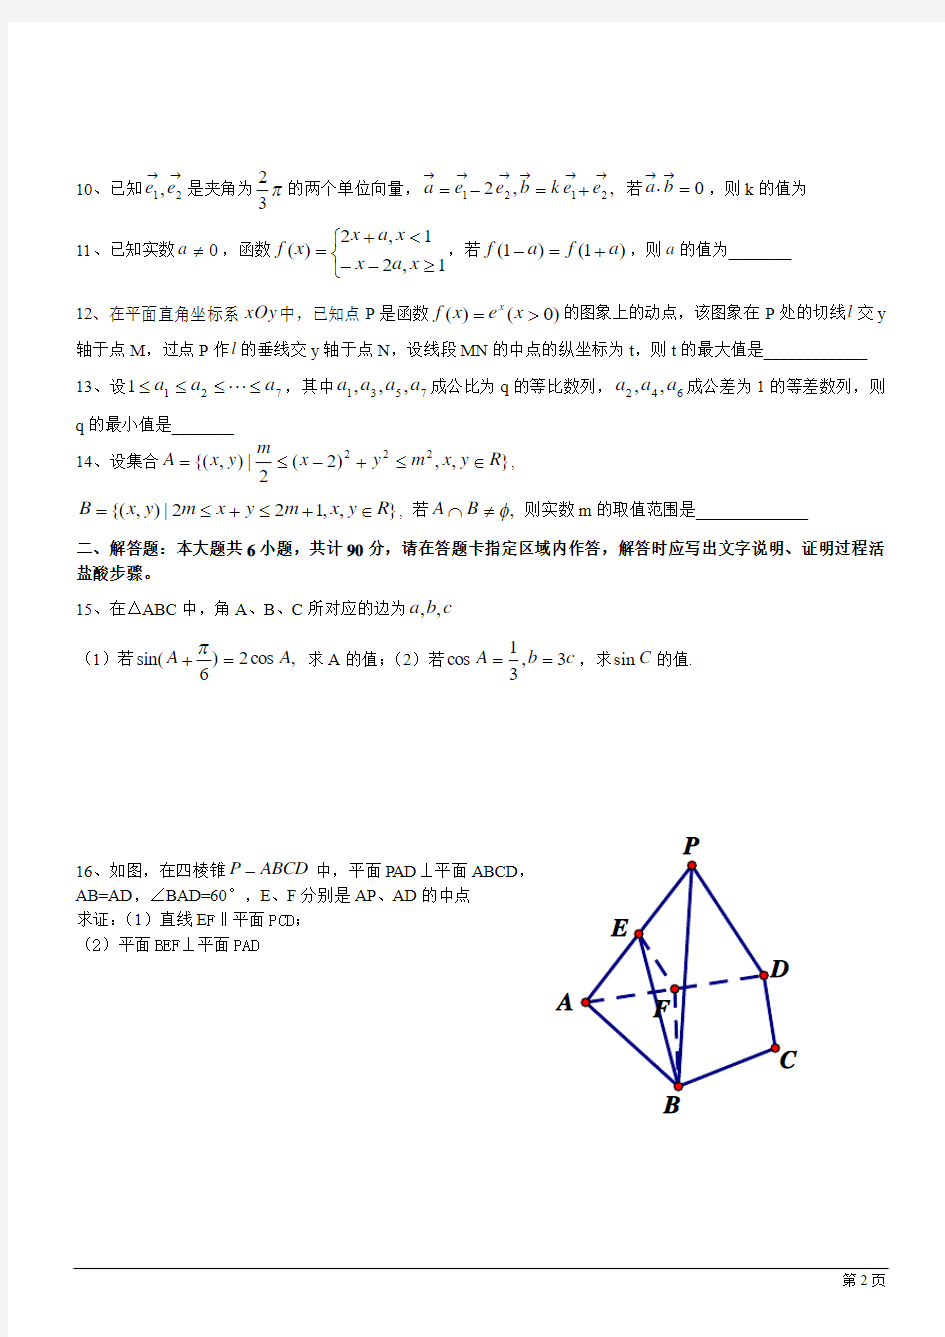 2012年江苏高考数学试题(含附加题及全解)